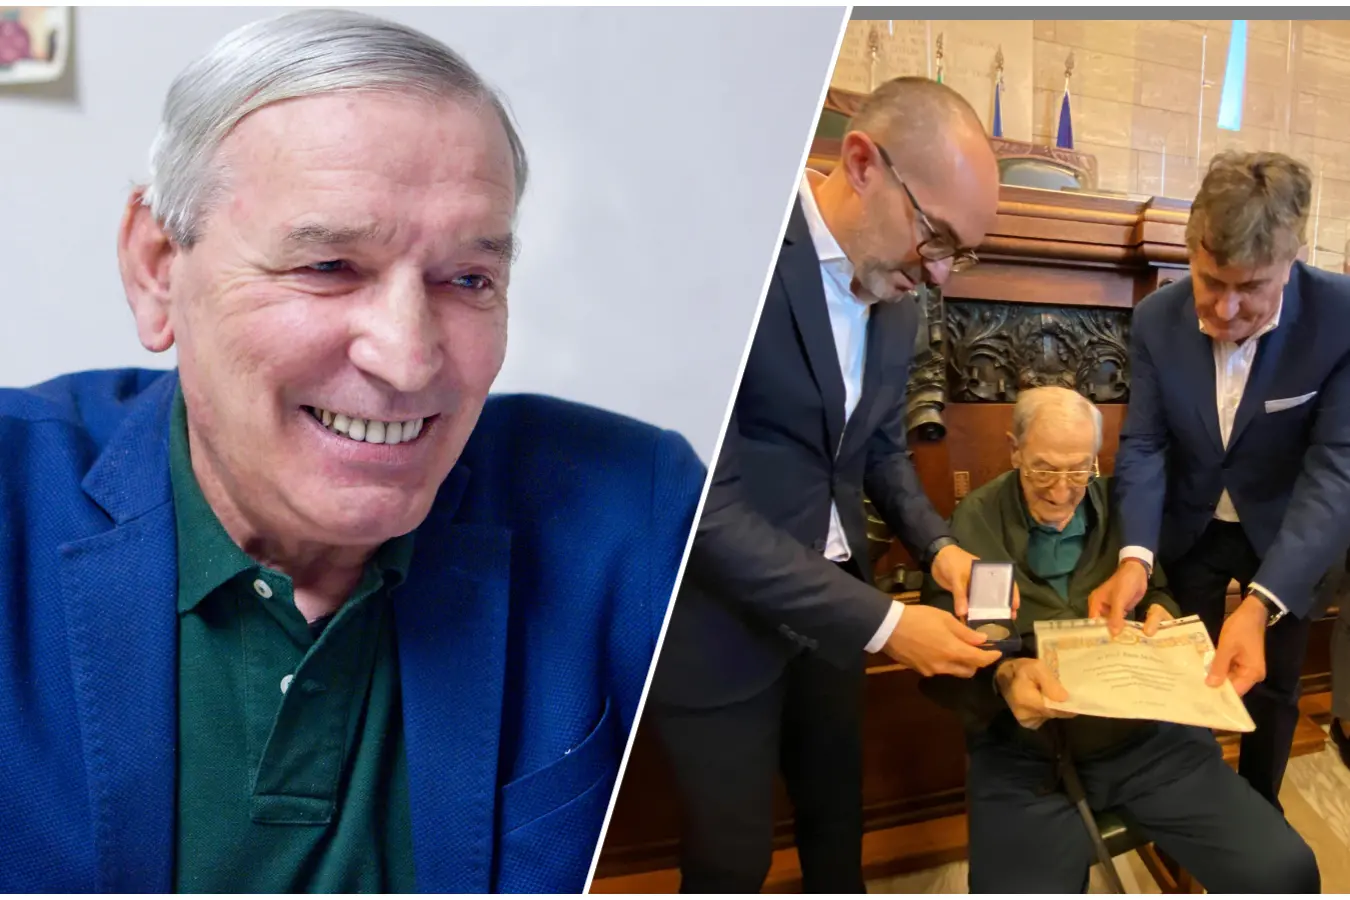 Gigi Riva und eines der letzten Bilder von Enzo Molinas, während er von Bürgermeister Truzzu Anerkennung für seine lange Tätigkeit erhält (Archiv)